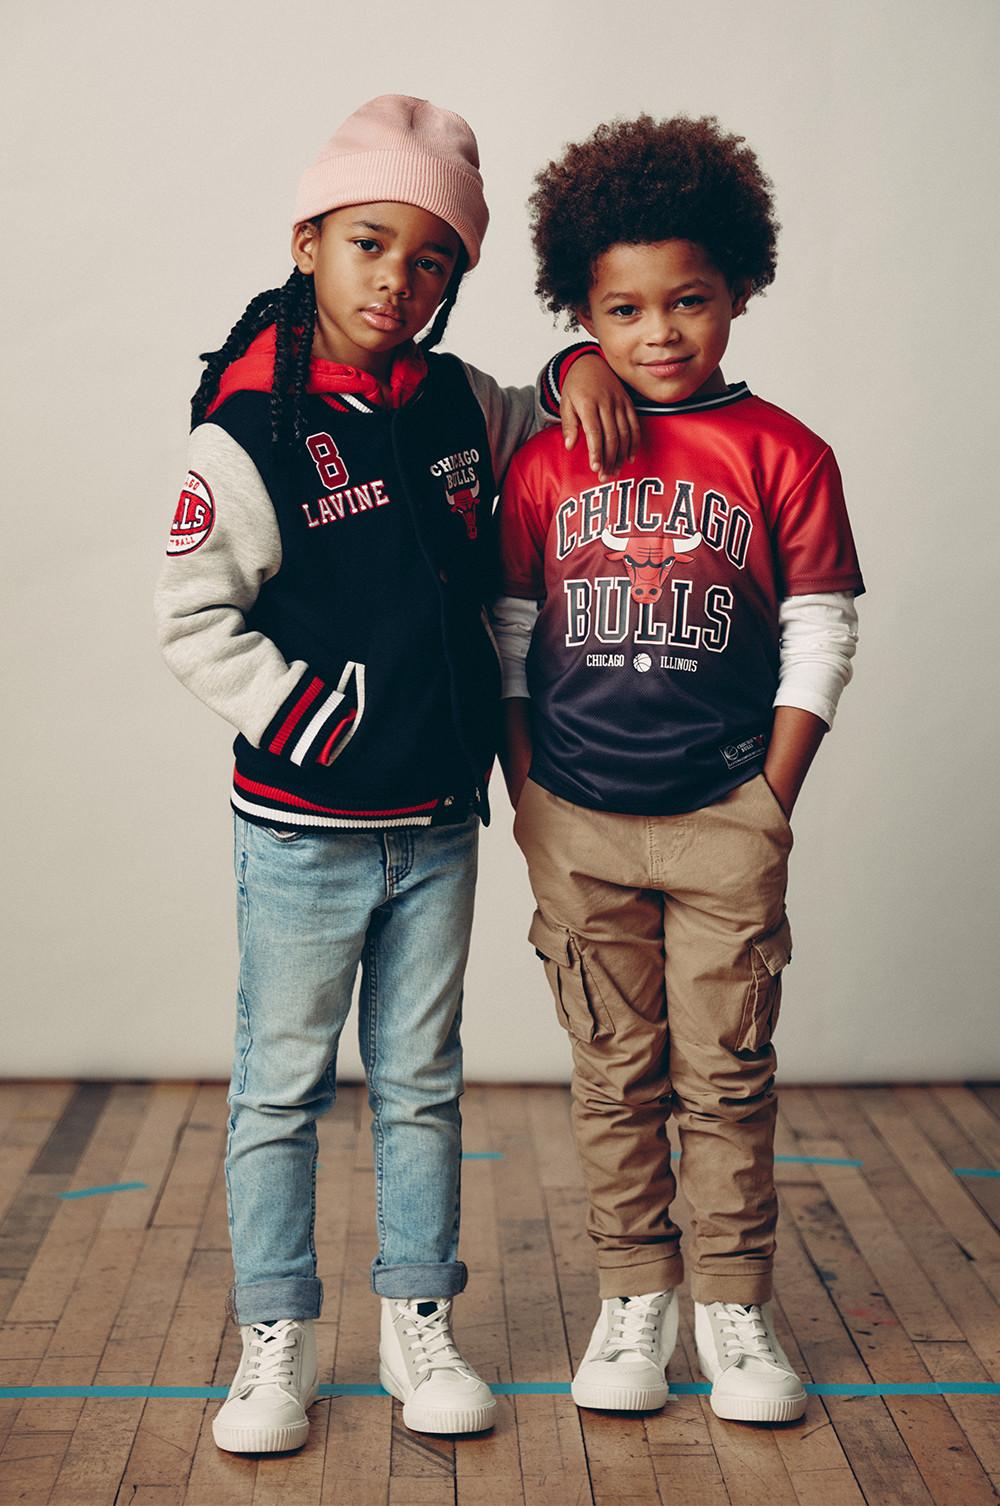 Kinder in Chicago Bulls College-Jacken und Tops